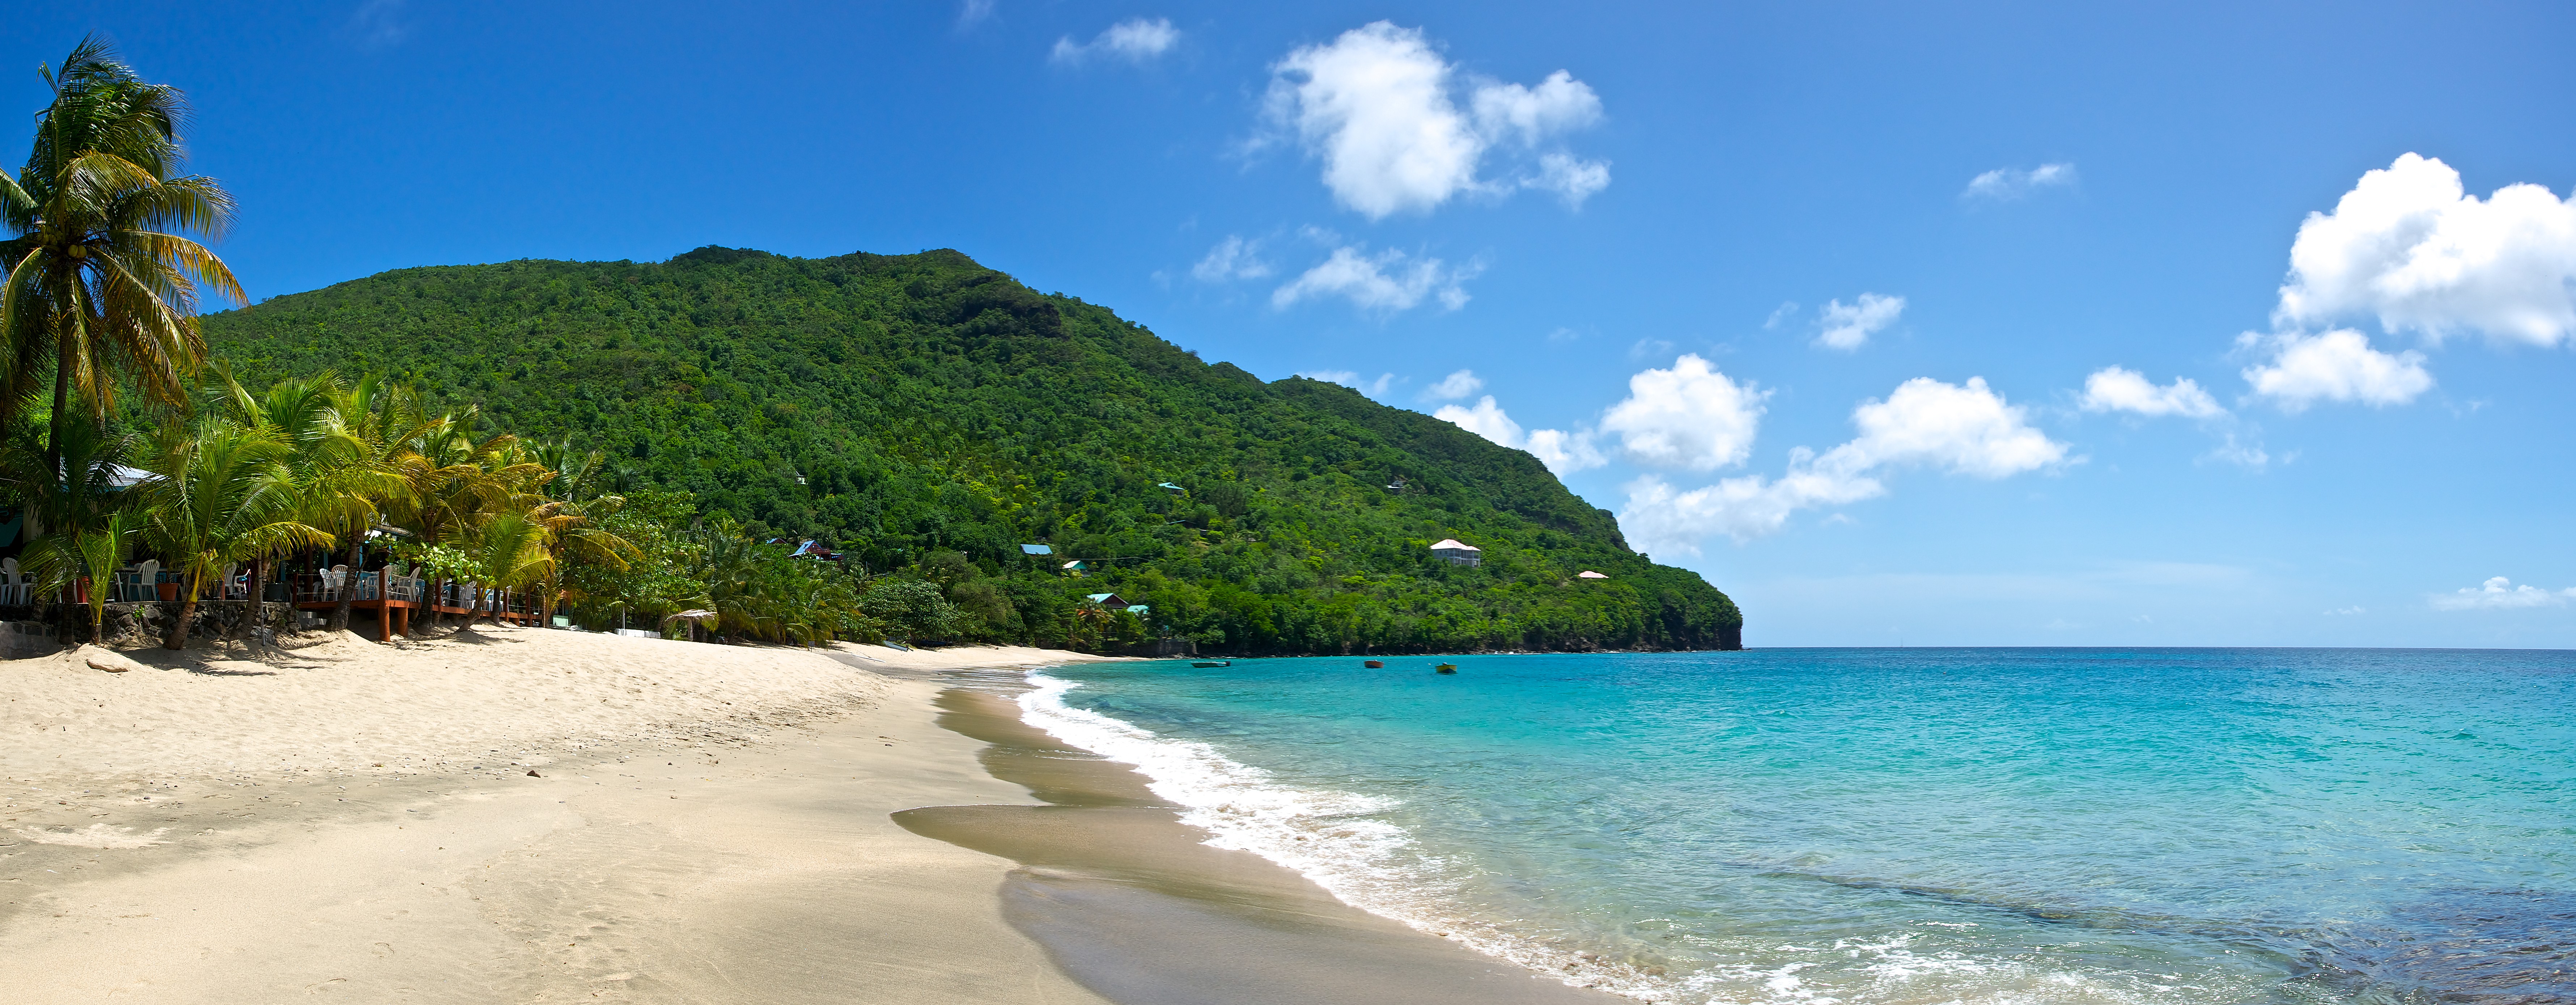 5 razões para visitar São Vicente e Granadinas 